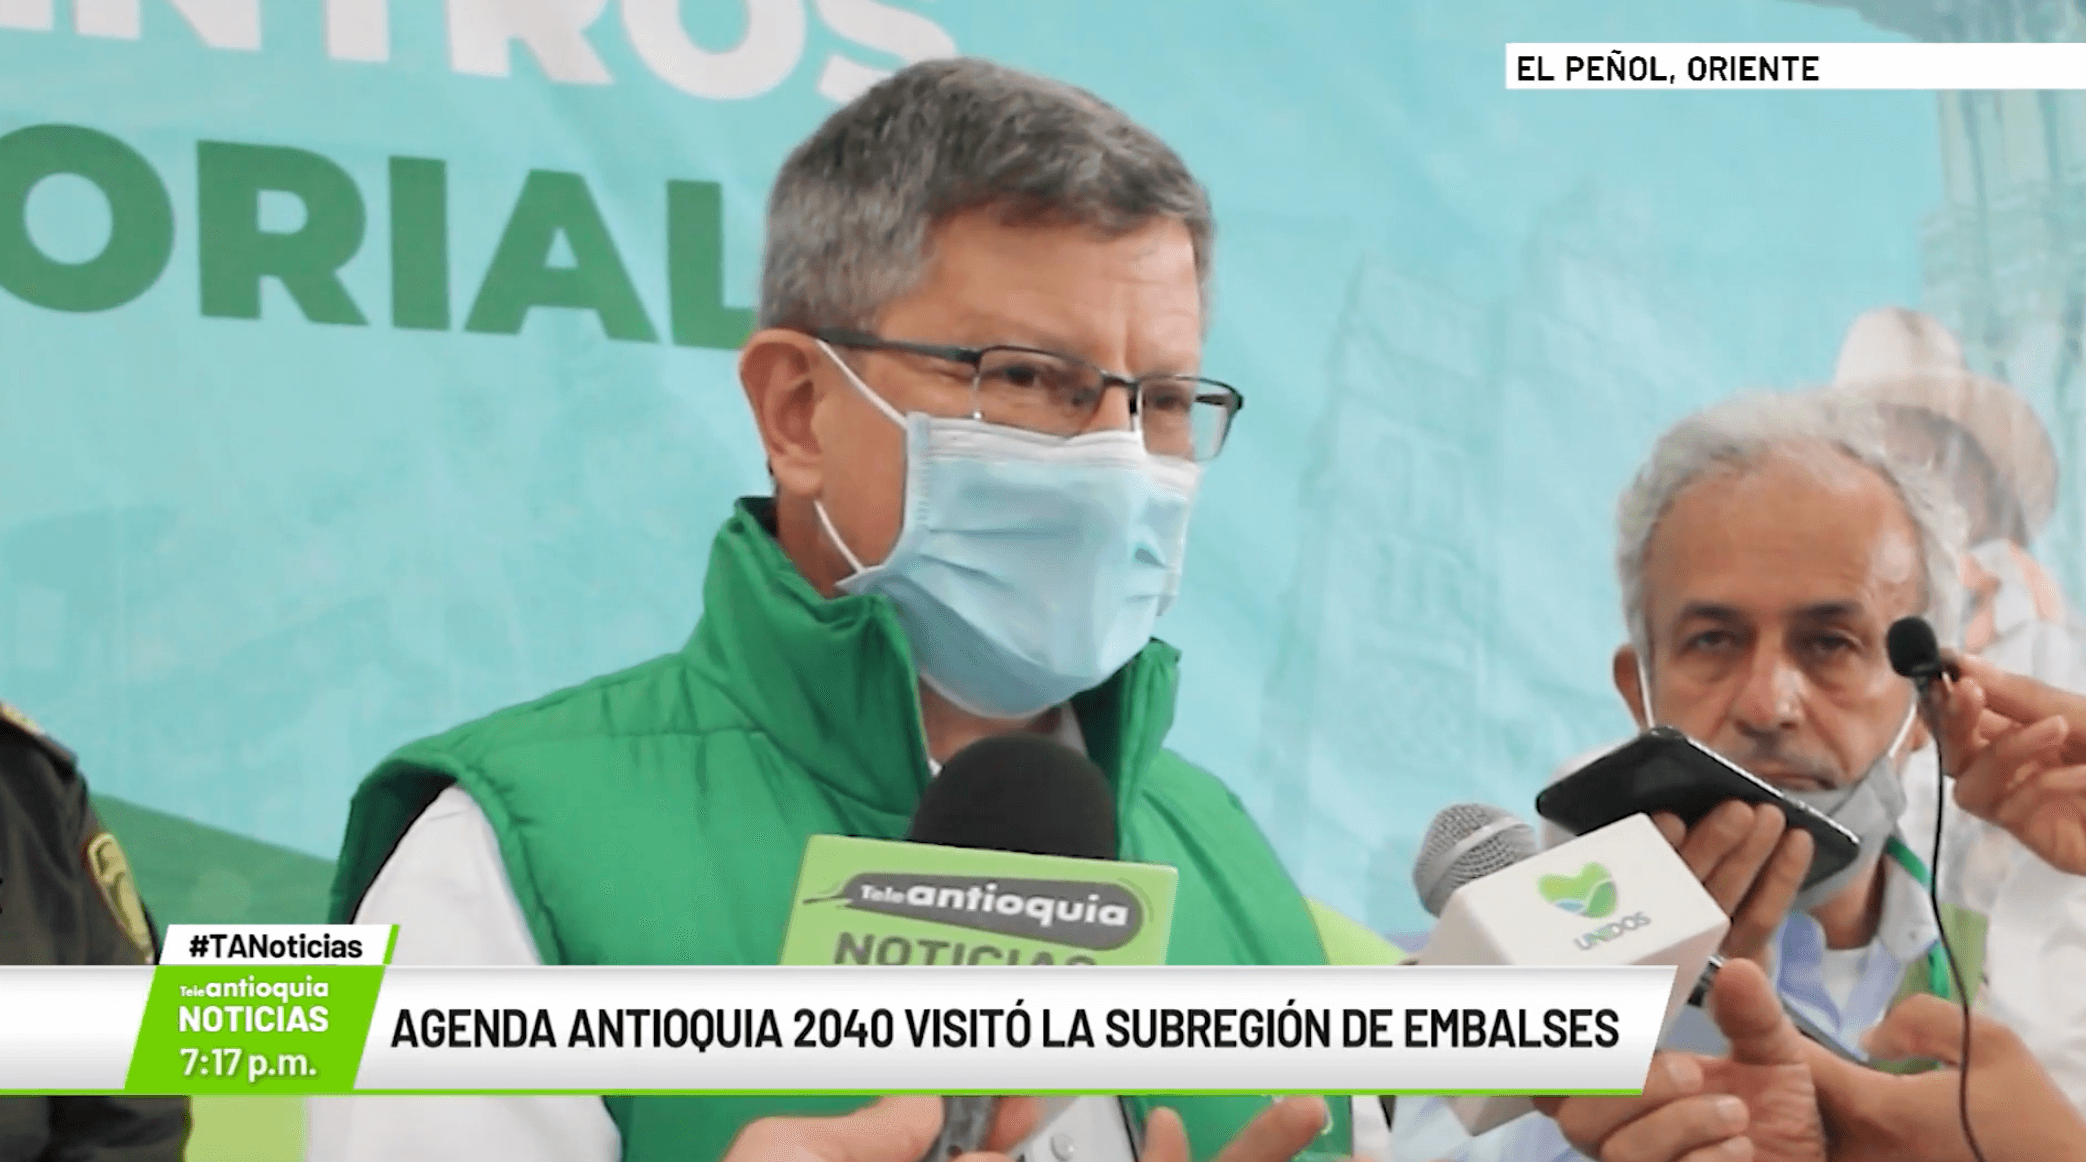 Agenda Antioquia 2040 visitó la subregión de embalses